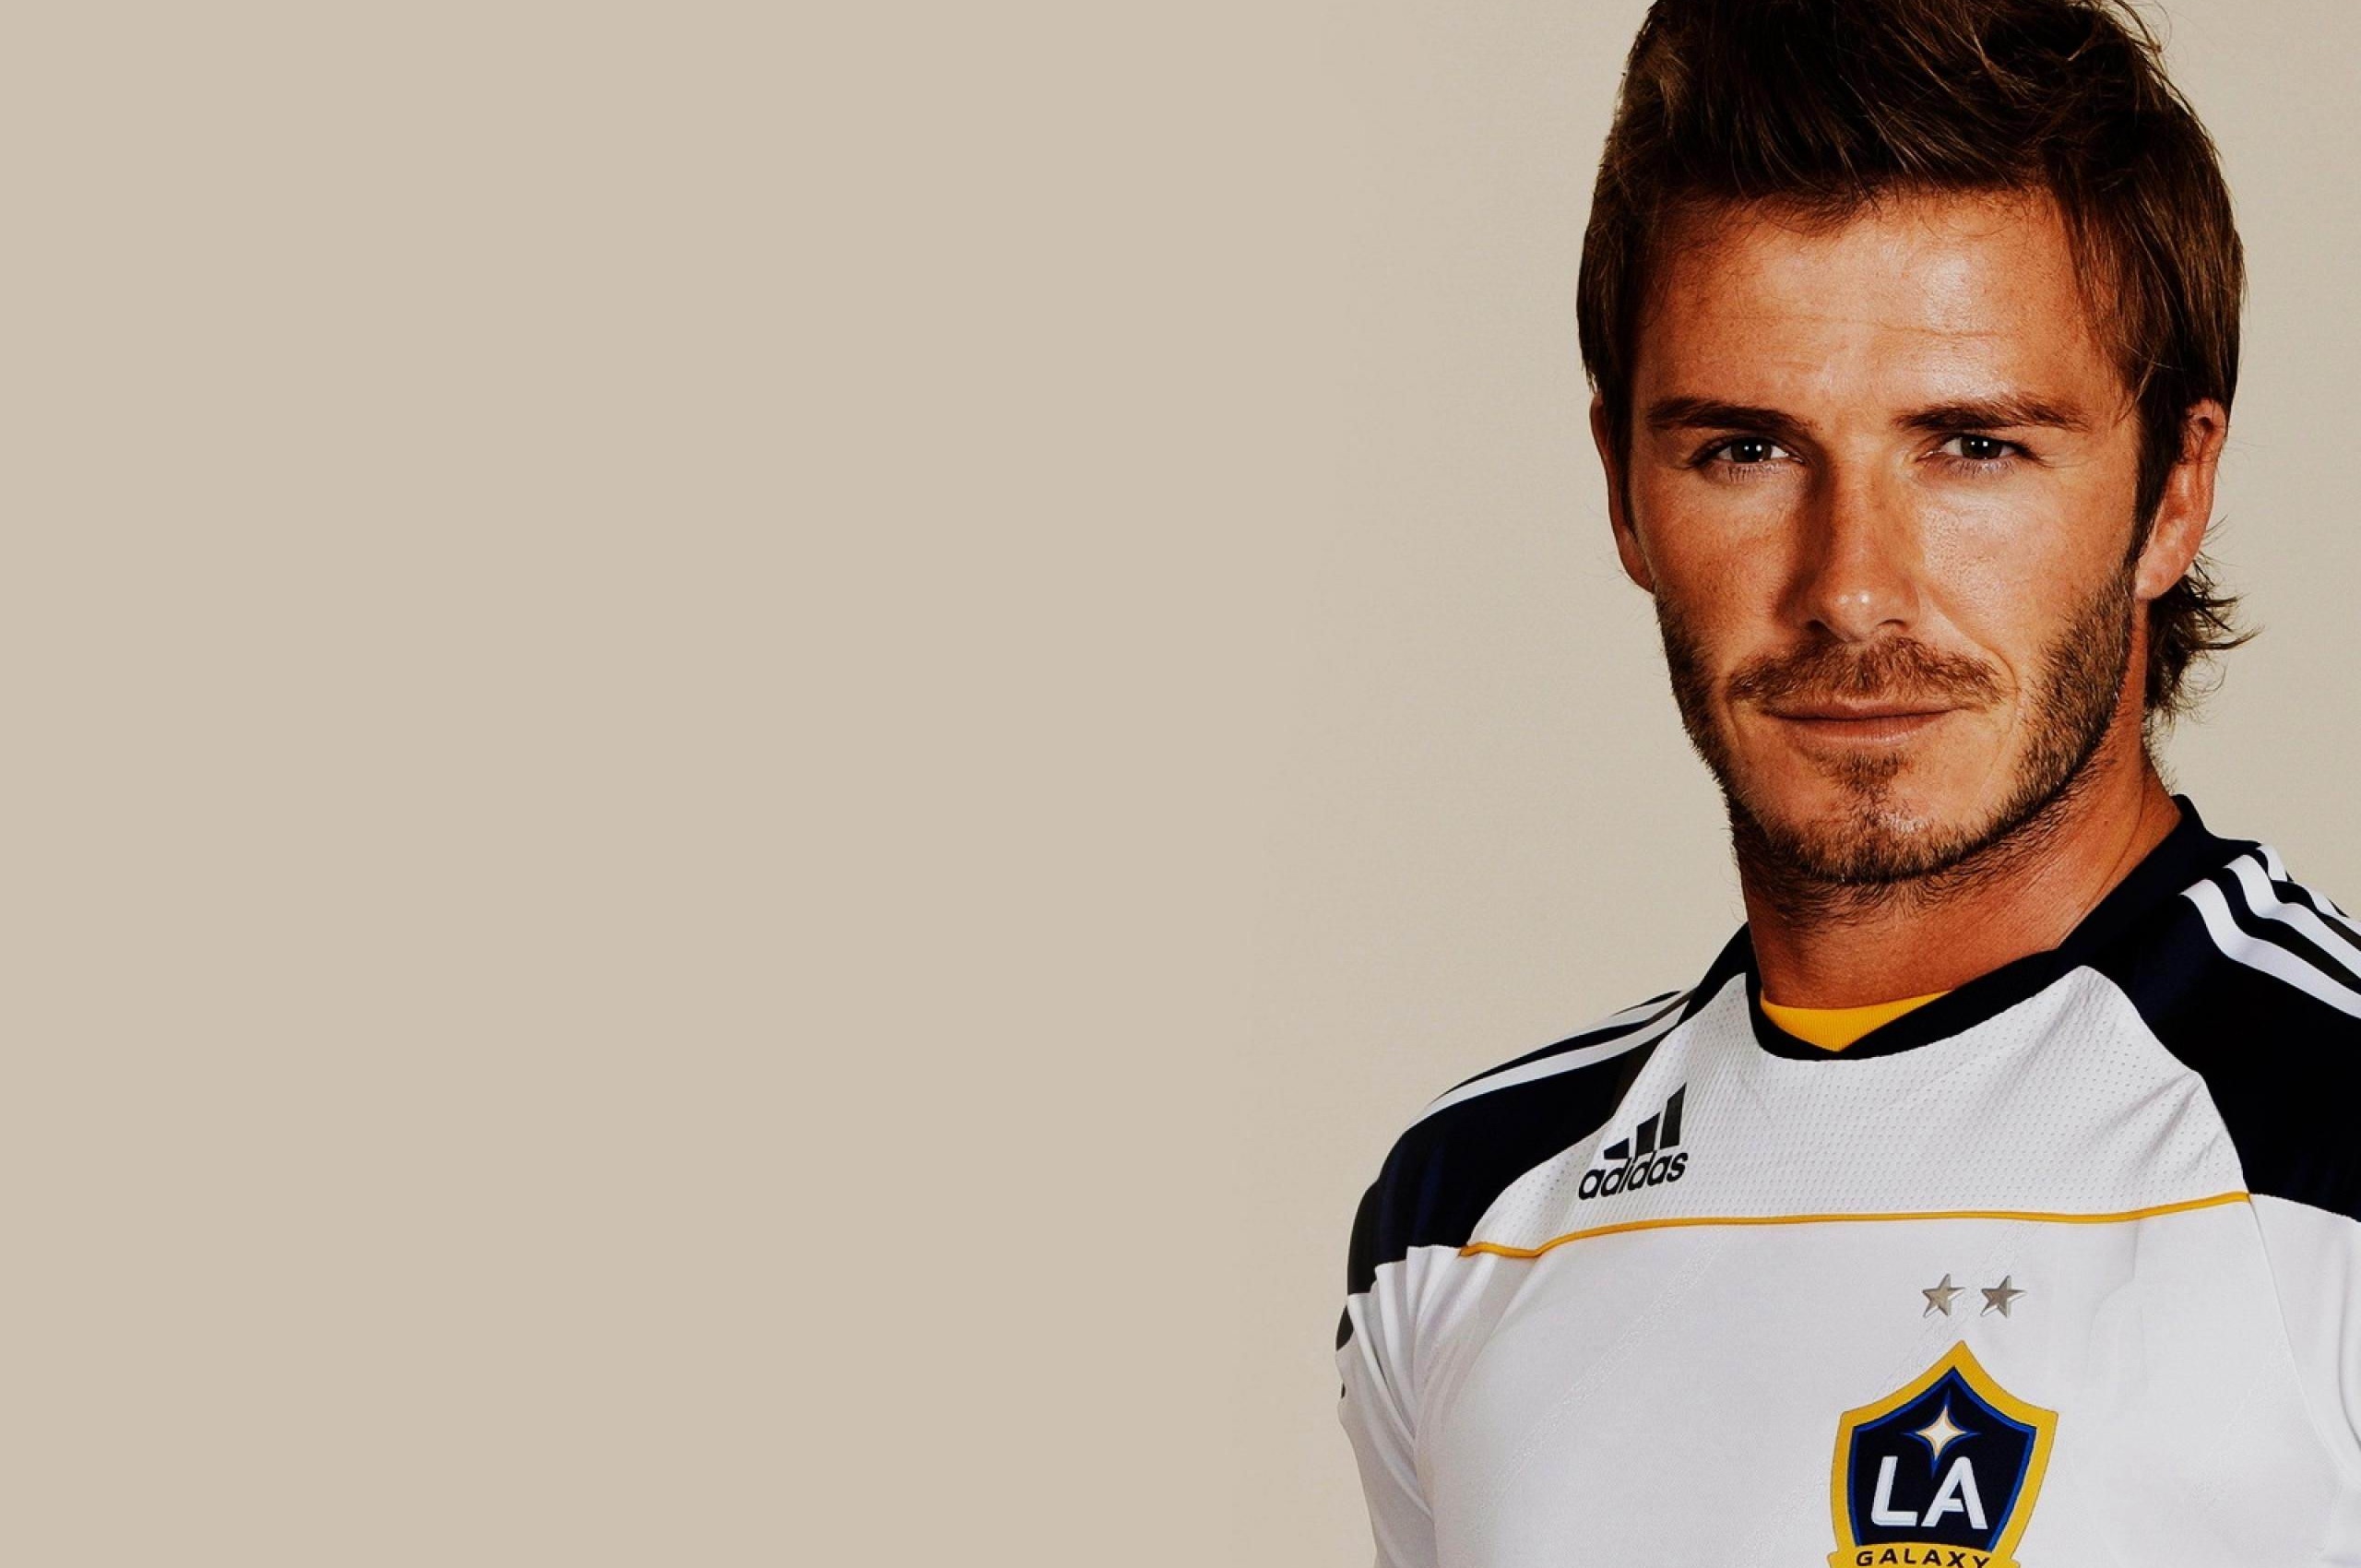 Charming David Beckham